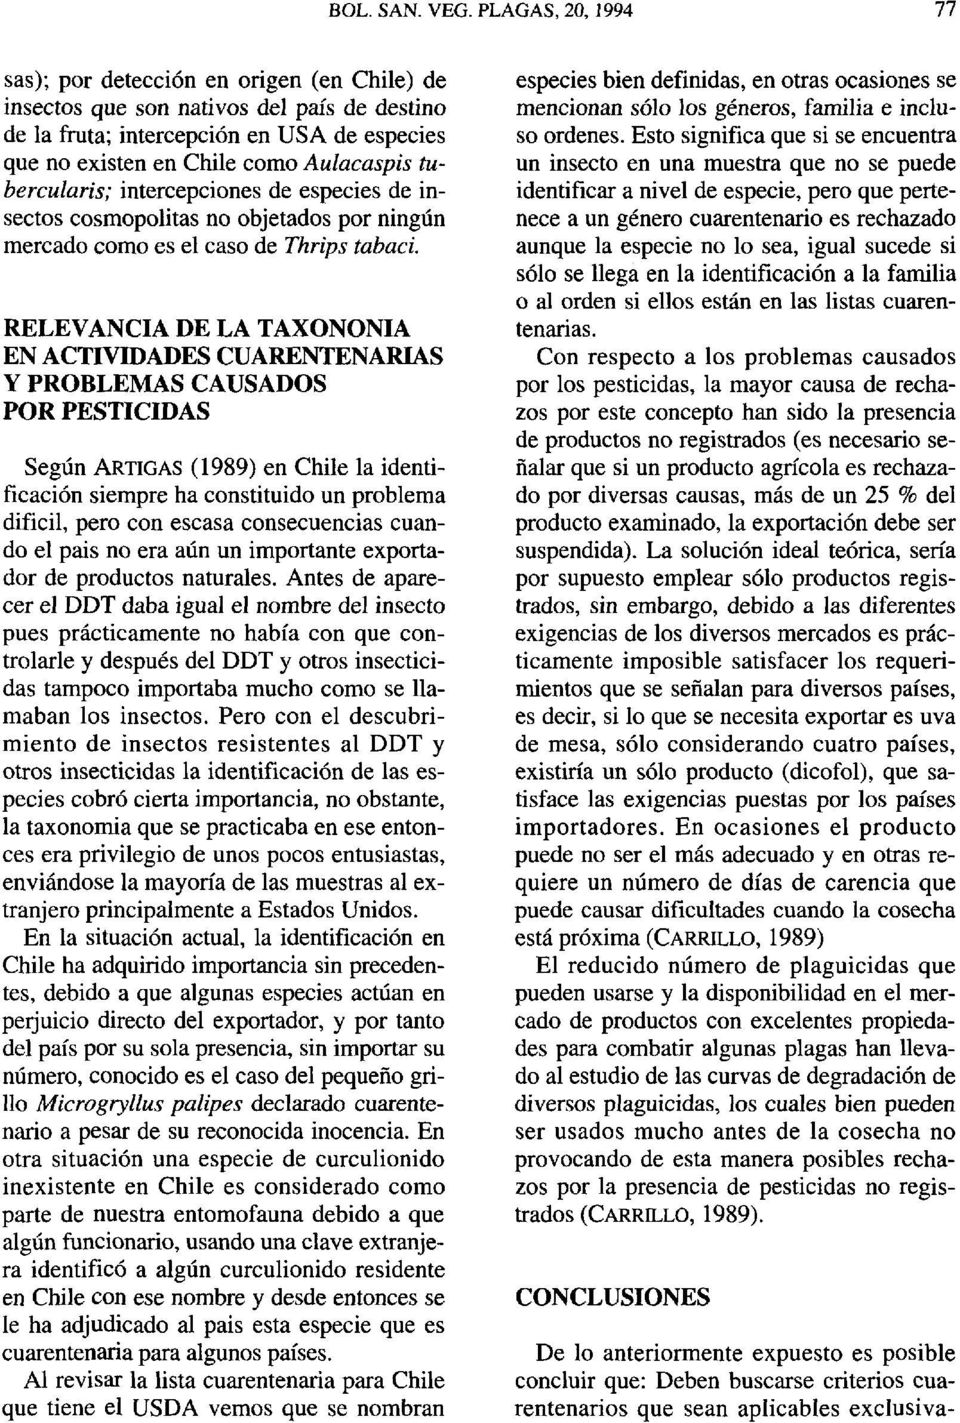 RELEVANCIA DE LA TAXONONIA EN ACTIVIDADES CUARENTENARIAS Y PROBLEMAS CAUSADOS POR PESTICIDAS Según ARTIGAS (1989) en Chile la identificación siempre ha constituido un problema difícil, pero con